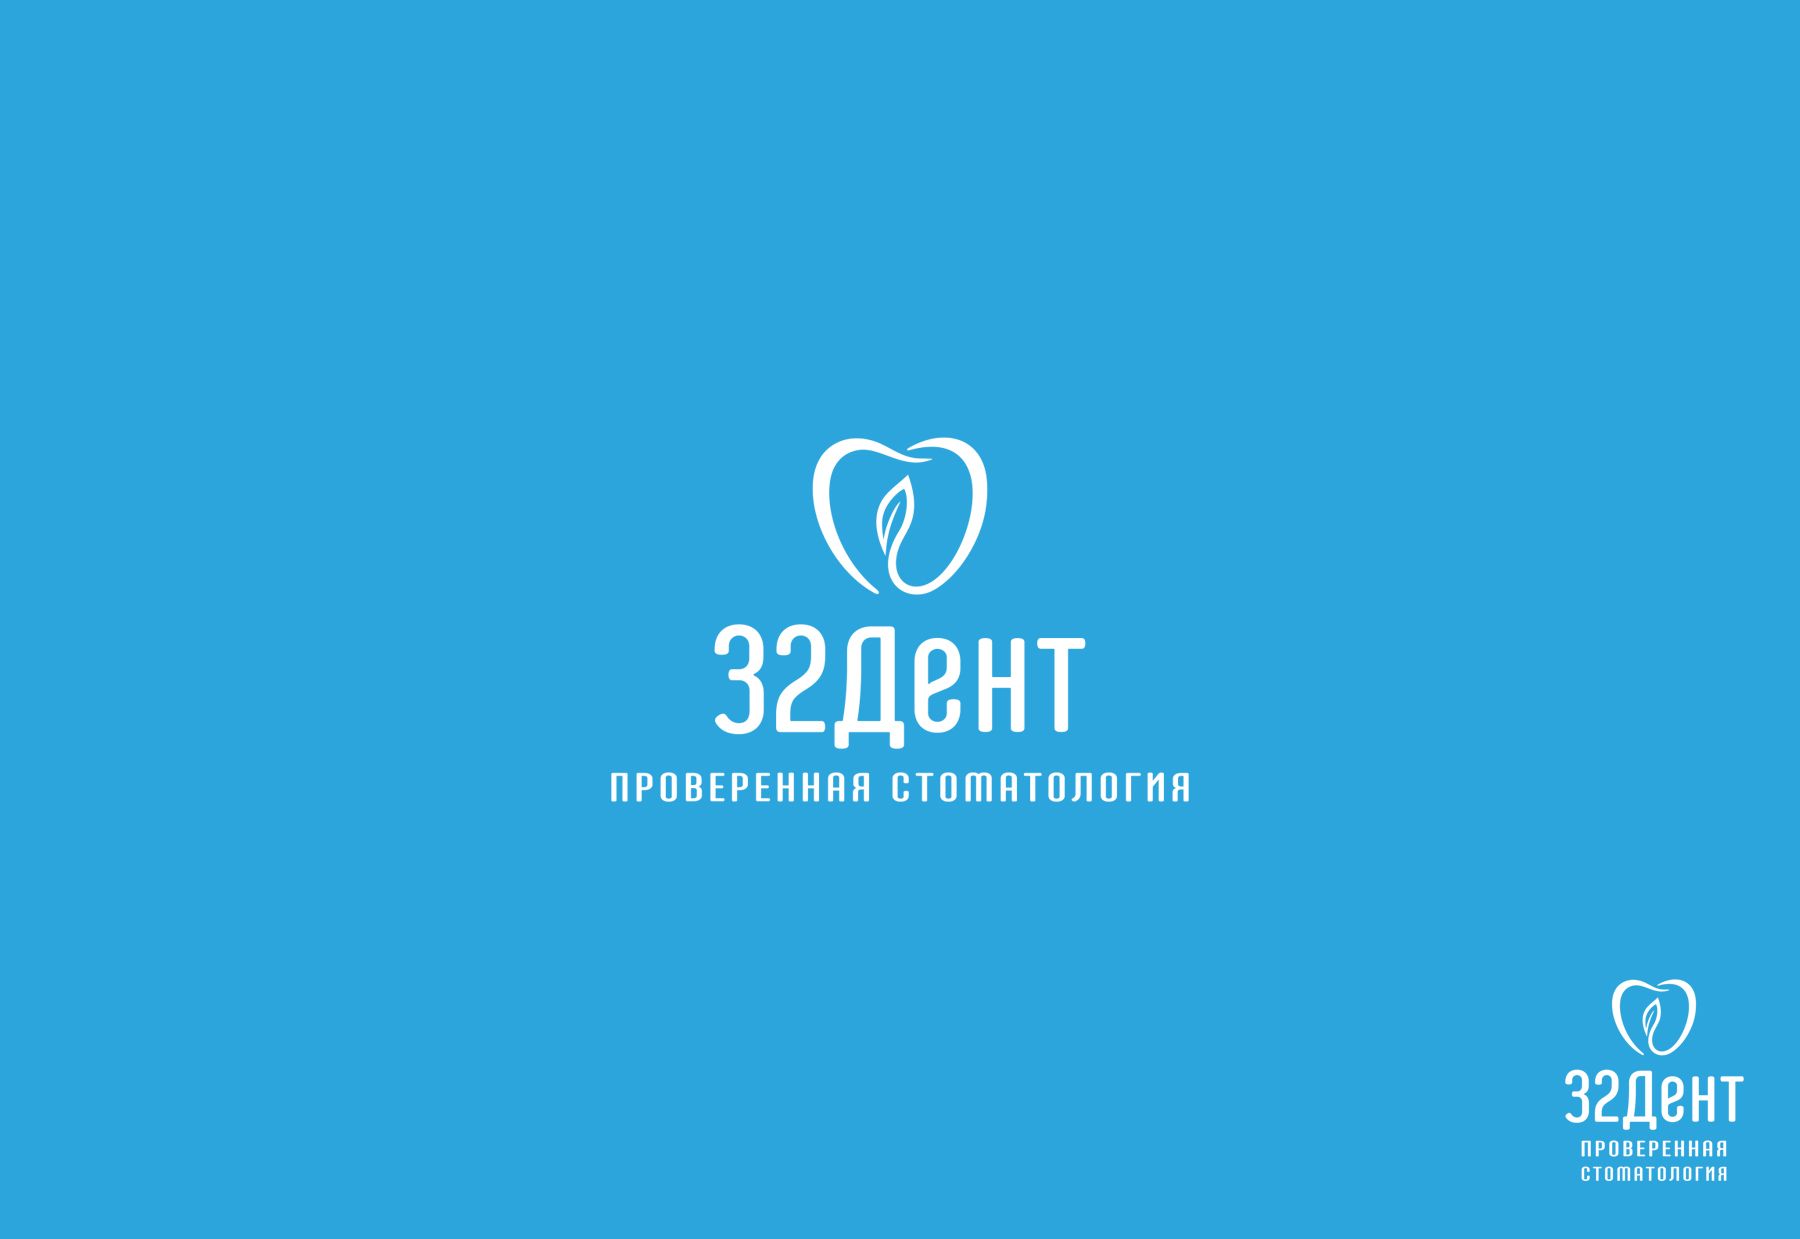 Логотип для сети стоматологических клиник - дизайнер Alexey_SNG